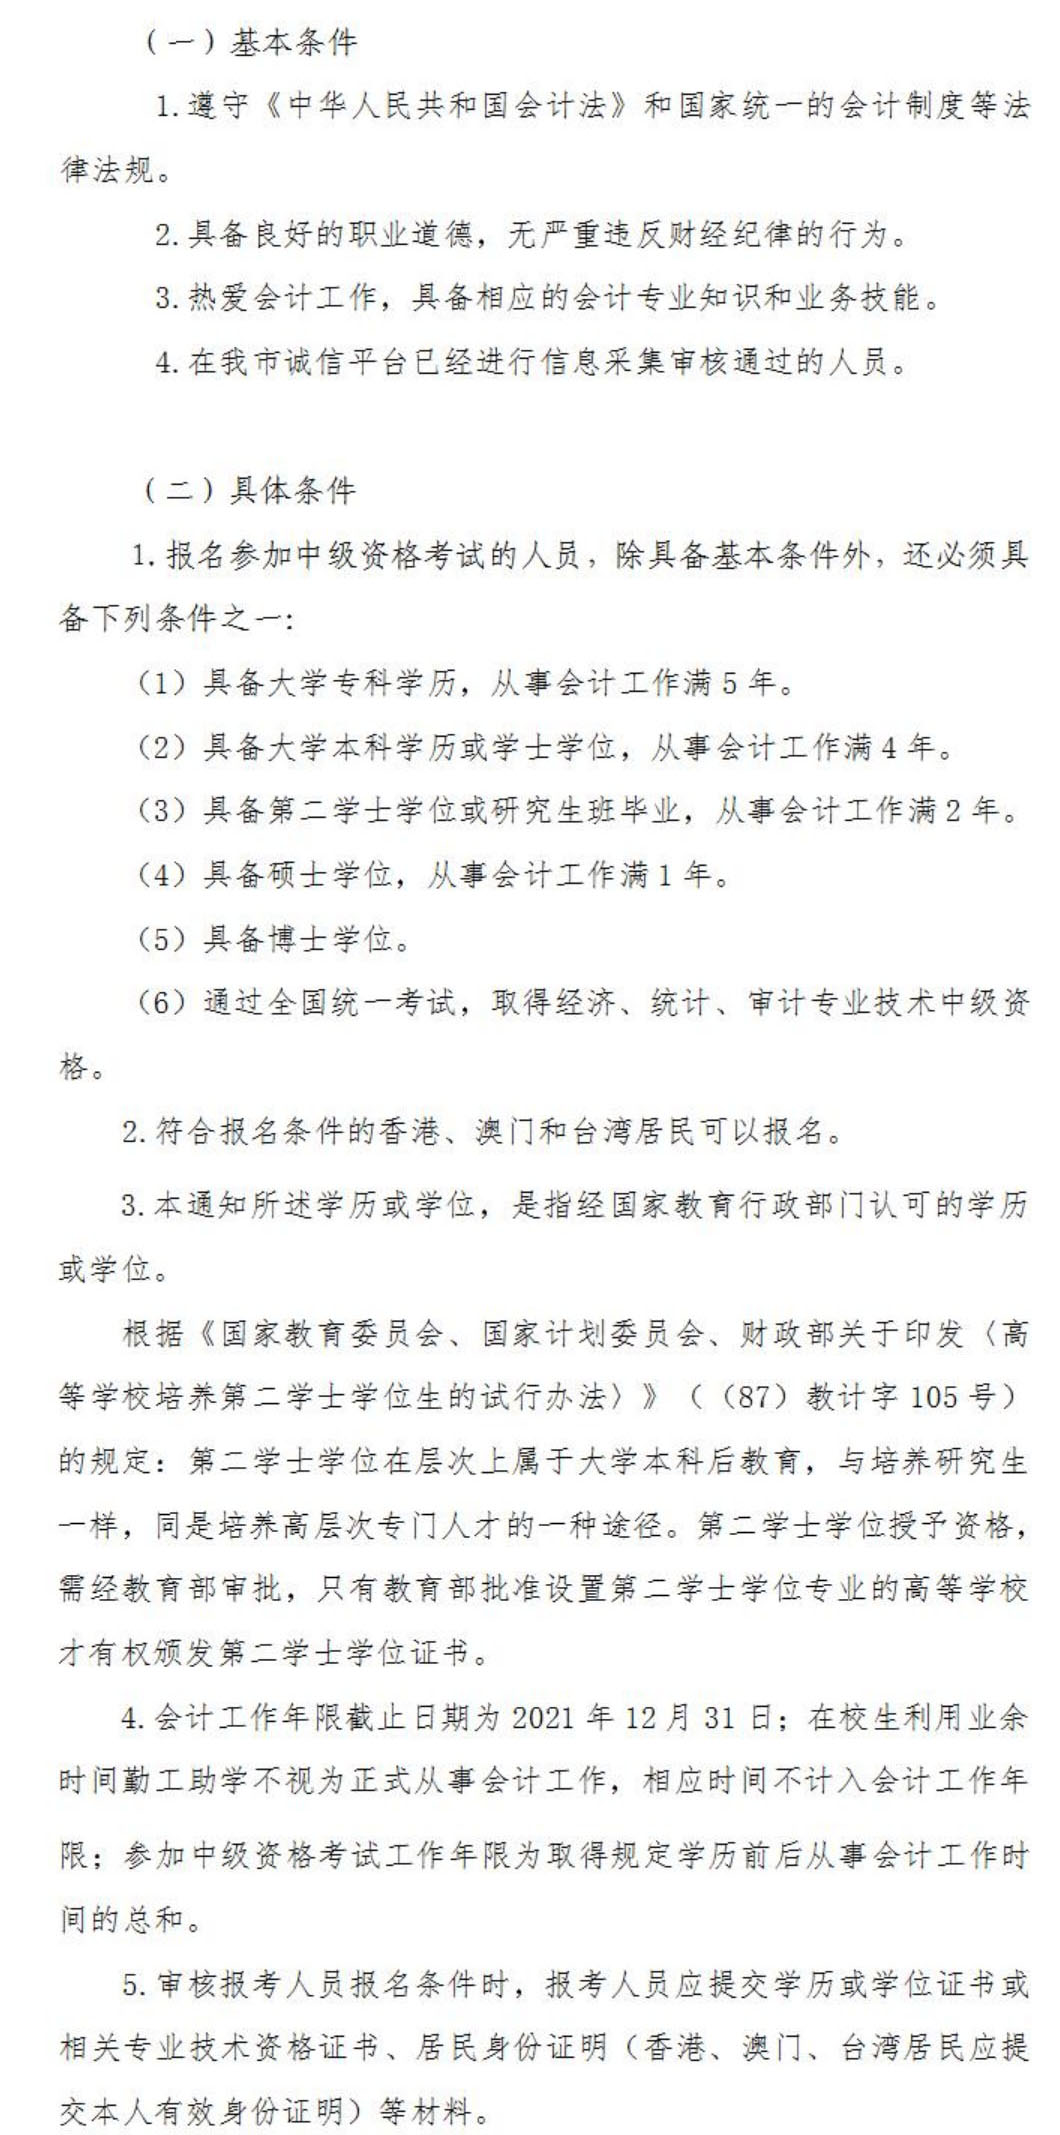 2021年天津中级会计职称考试报名条件已公布